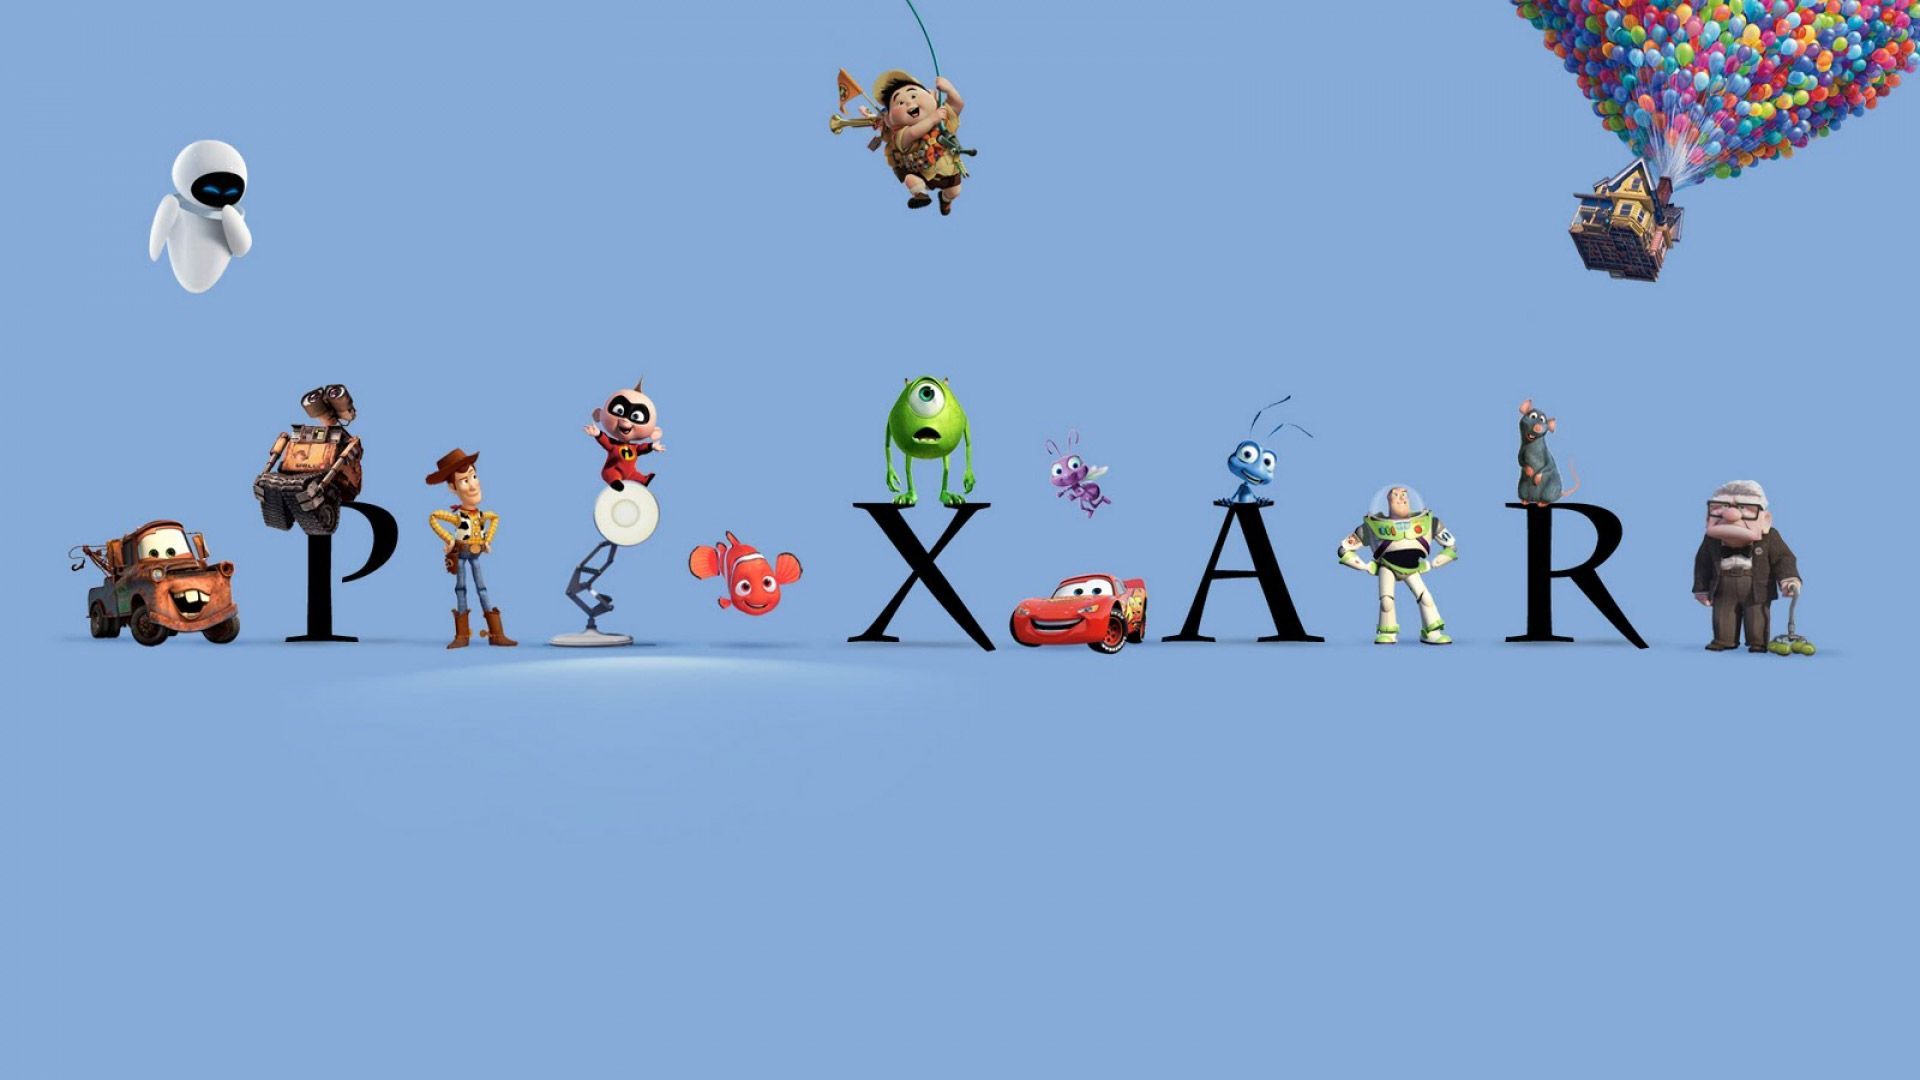 Soul Pixar Wallpapers